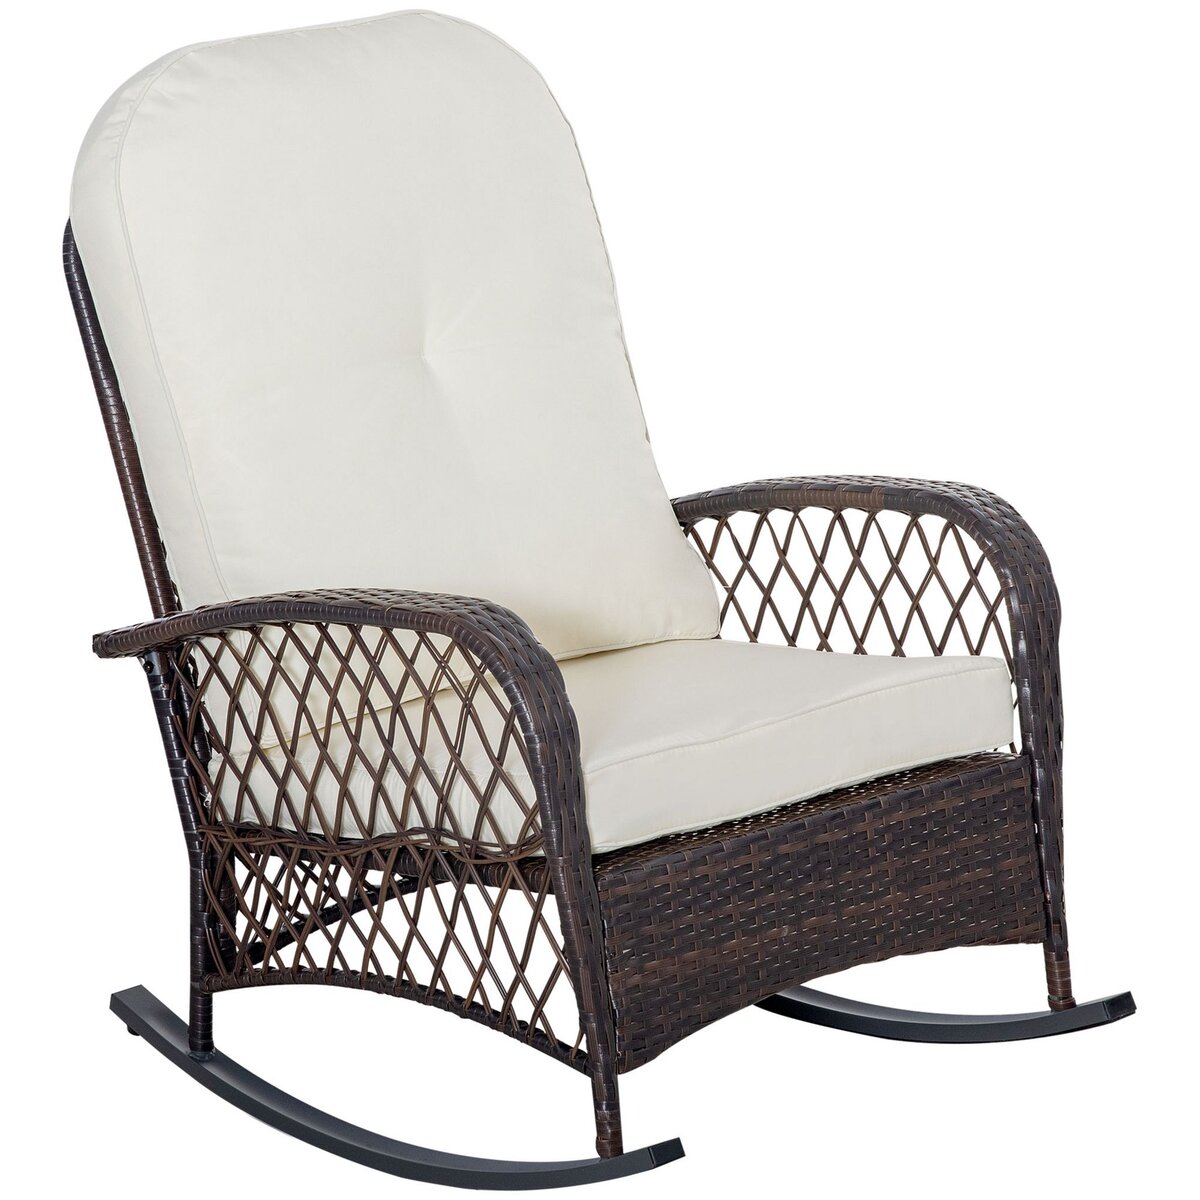 OUTSUNNY Fauteuil à bascule rocking chair intérieur extérieur en résine tressée avec coussins moelleux - dim. 75L x 103P x 96H cm - marron crème